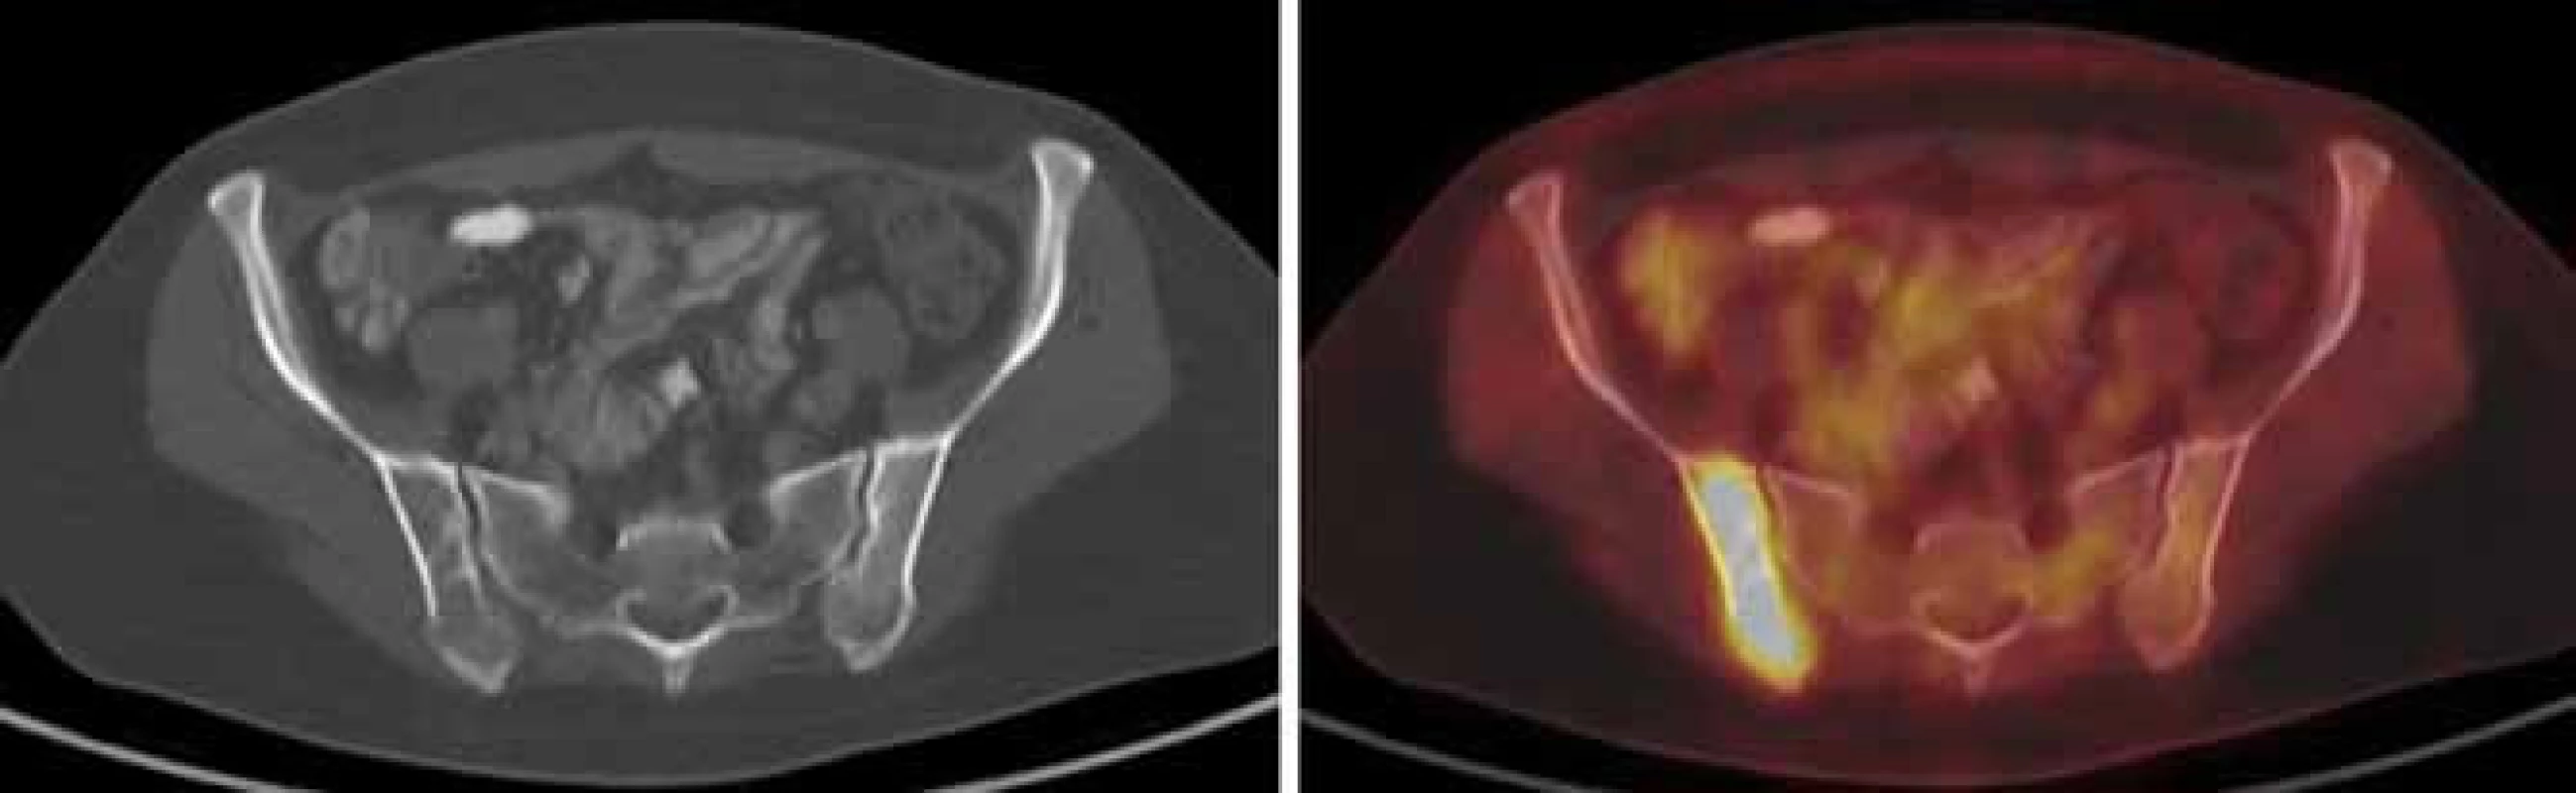 V CT obrazu jen naznačeno nevýrazné prořídnutí pravé lopaty kyčelní, ložisko ve skeletu vykazuje jednoznačně patologickou akumulaci FDG – osteolytická metastáza při diseminaci karcinomu levého prsu.